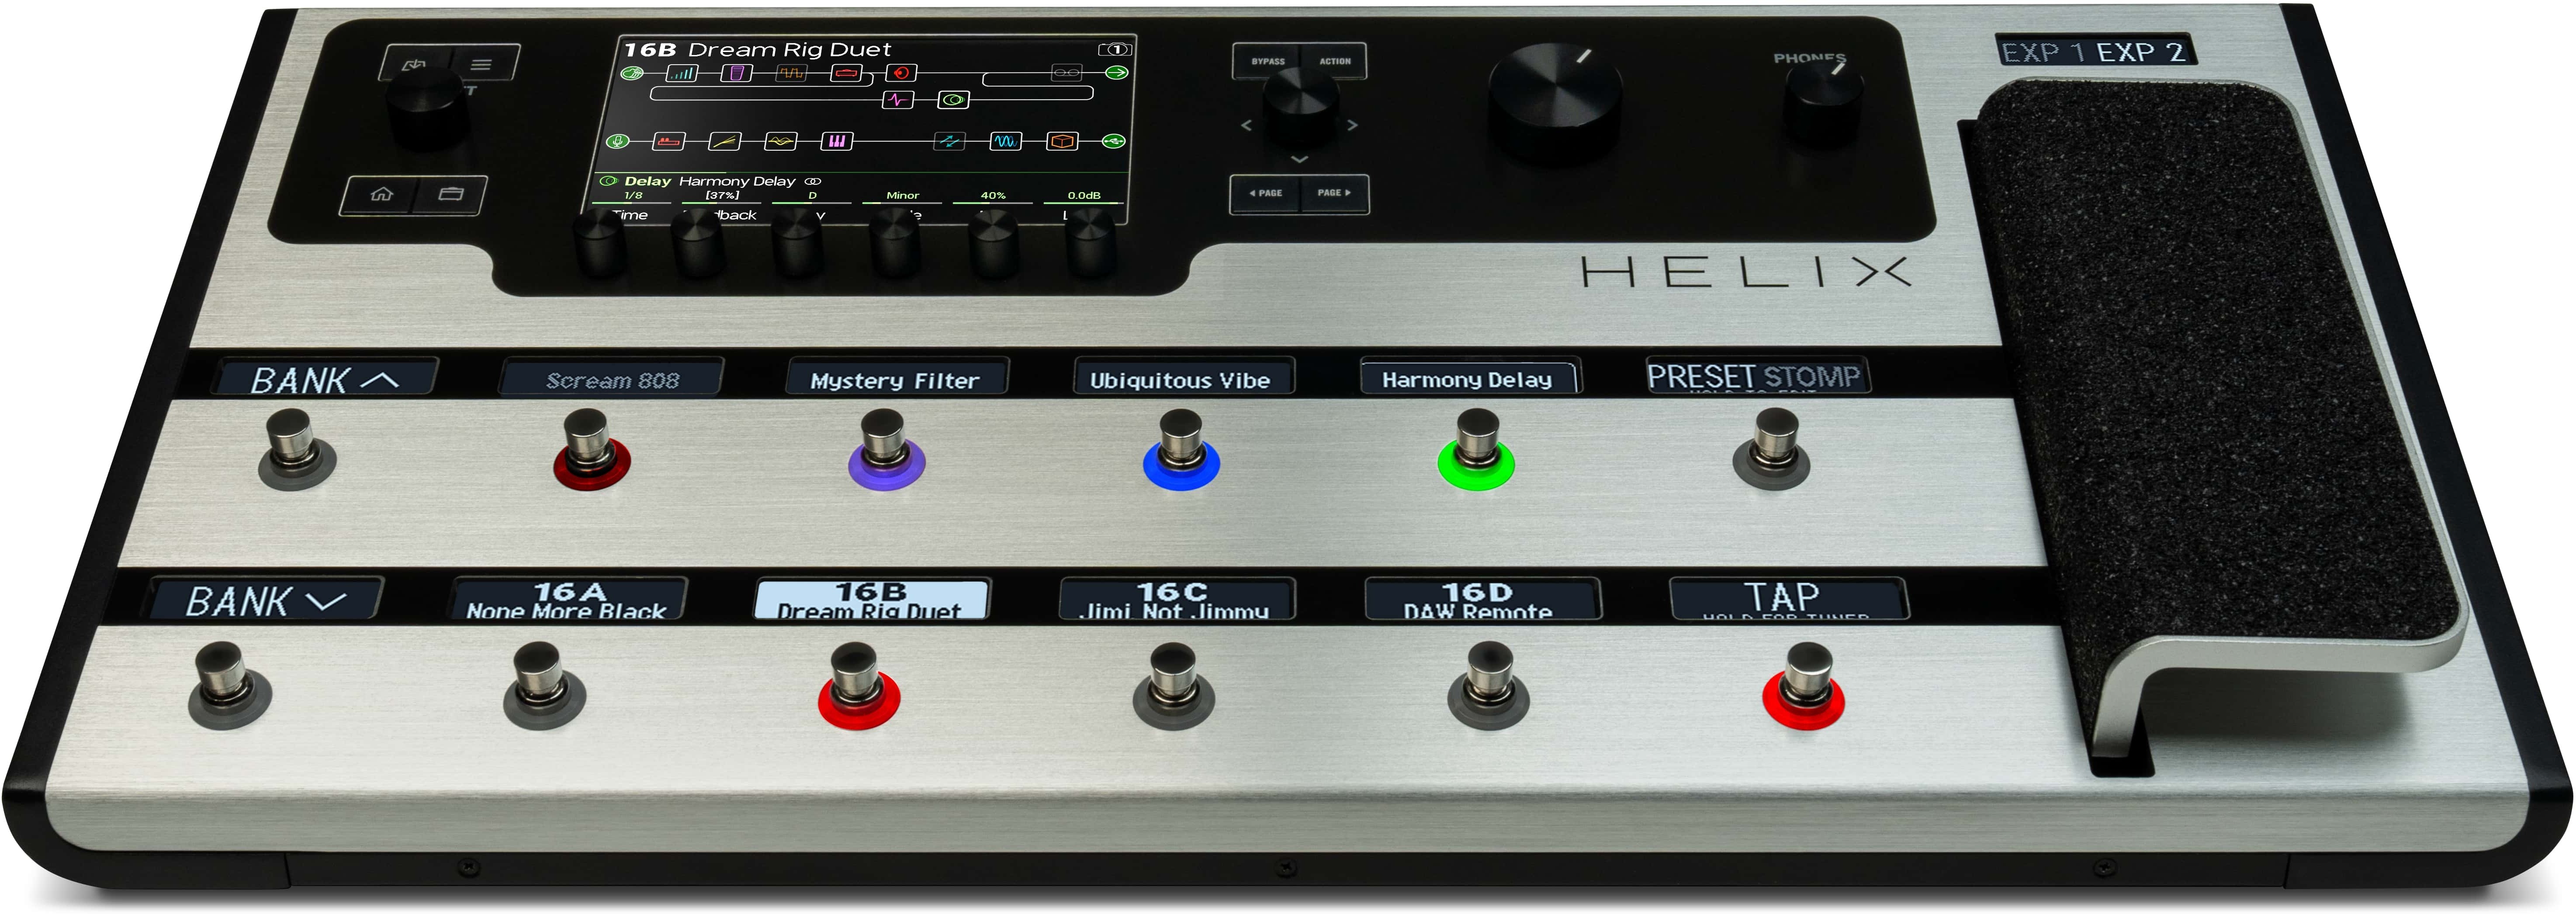 Line 6 Helix Floor Limited Edition Platinum Guitar Processor - Simulatie van gitaarversterkermodellering - Main picture